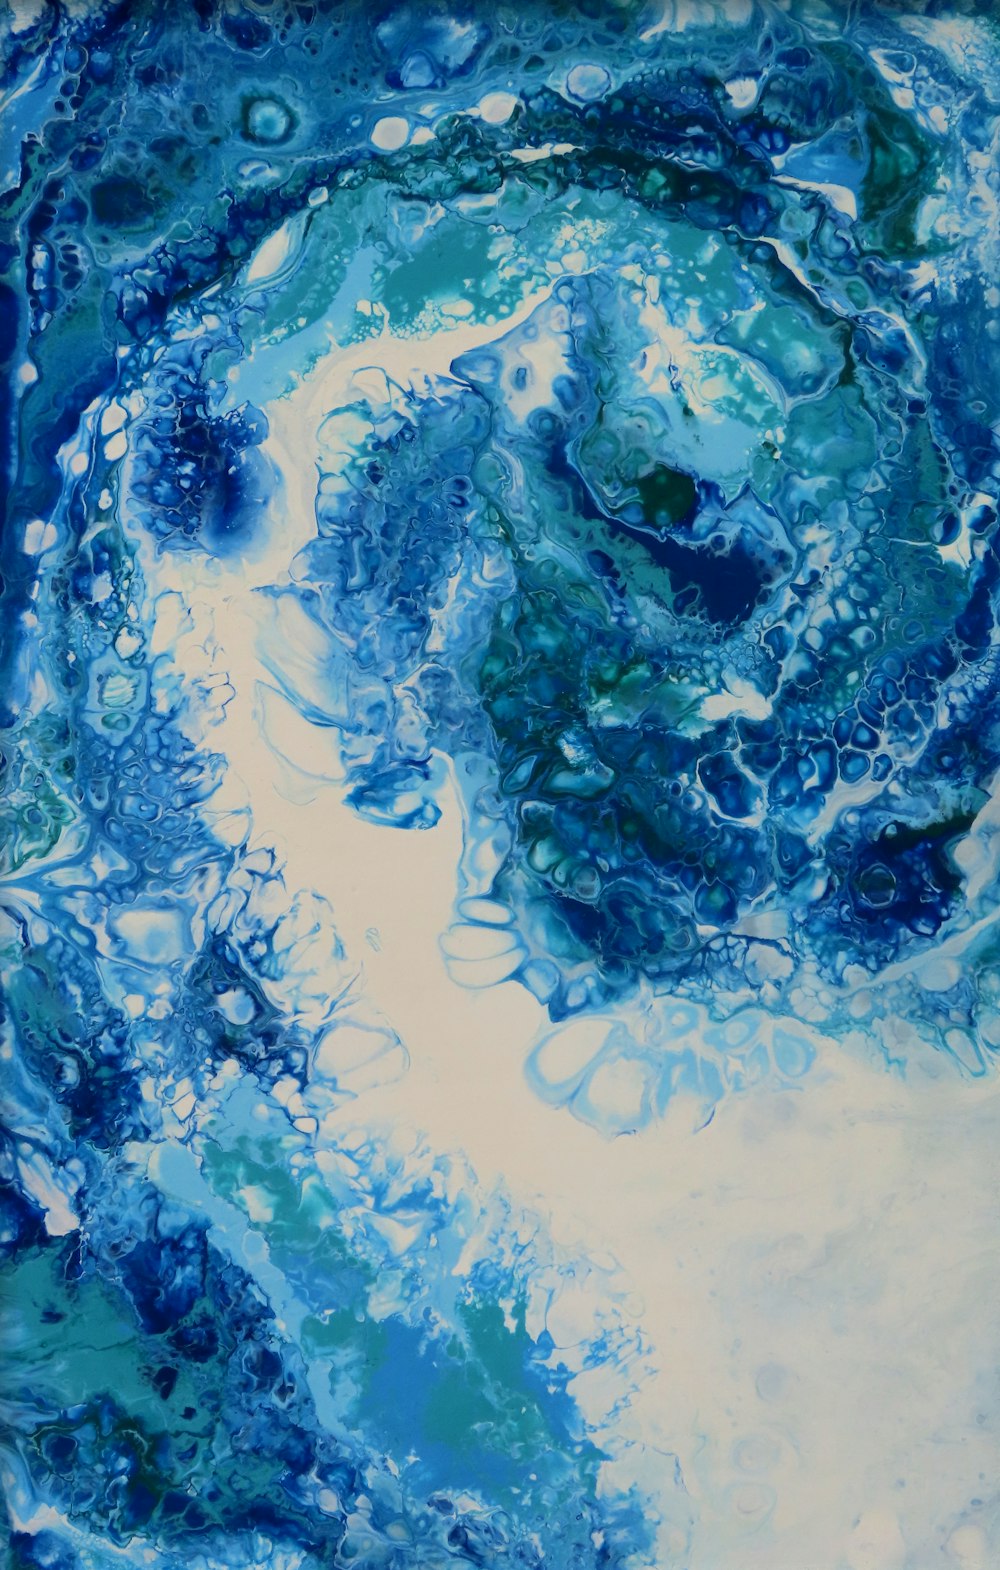 uma pintura de redemoinhos azuis e brancos em um fundo branco